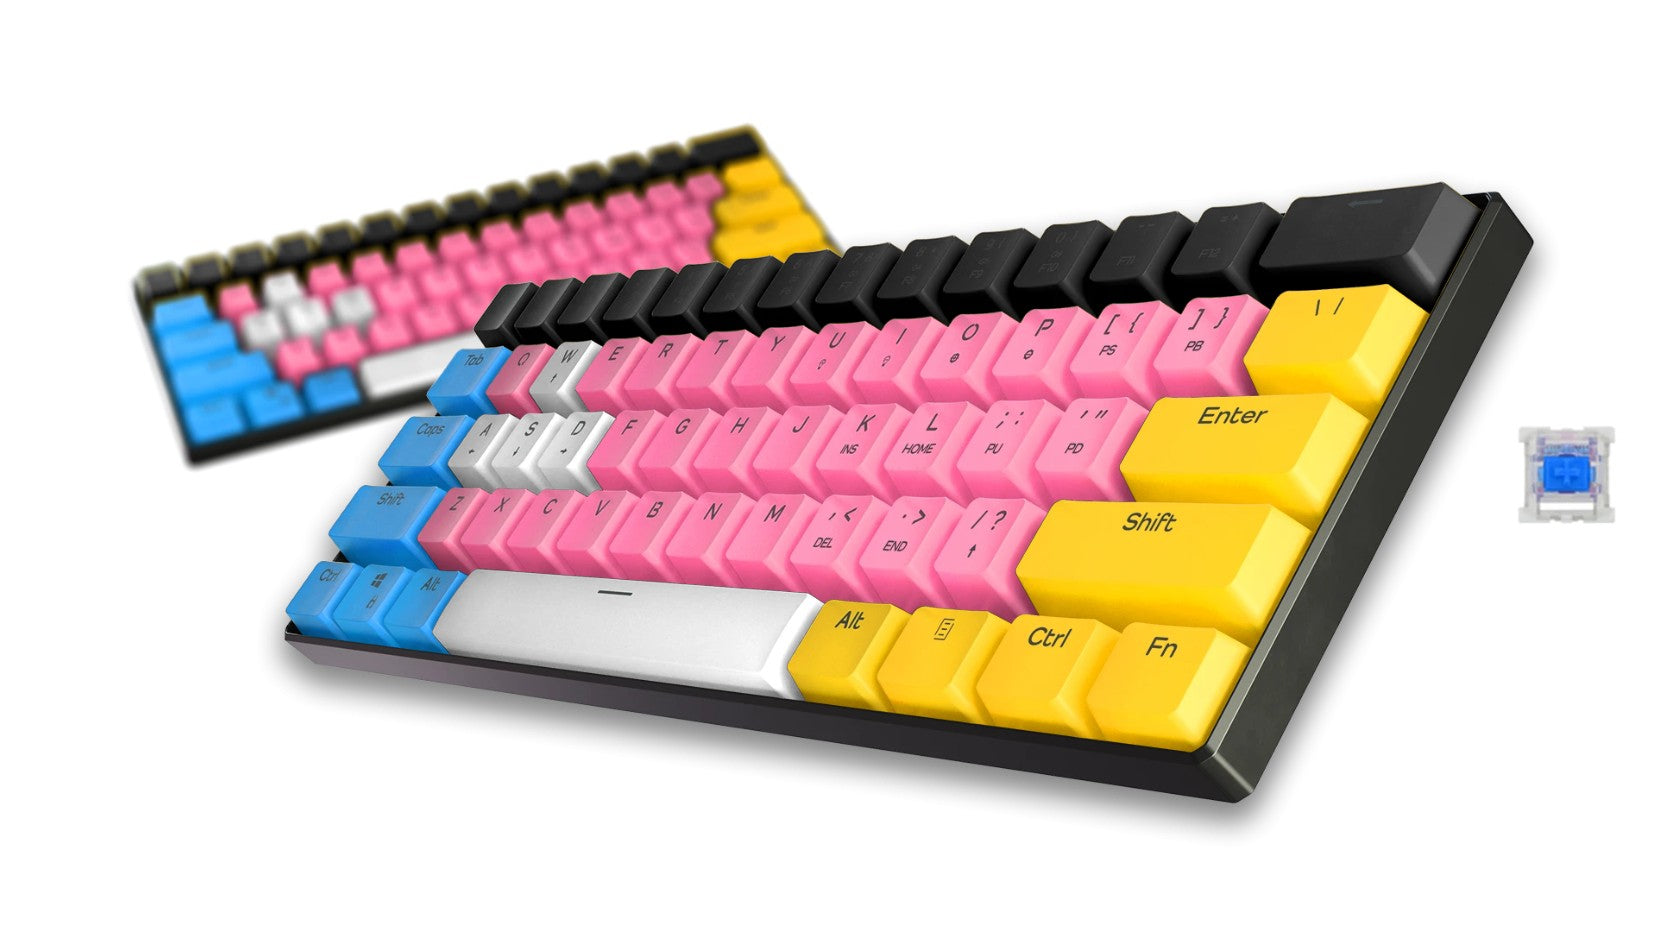 t1 pro - Gaming Keyboards